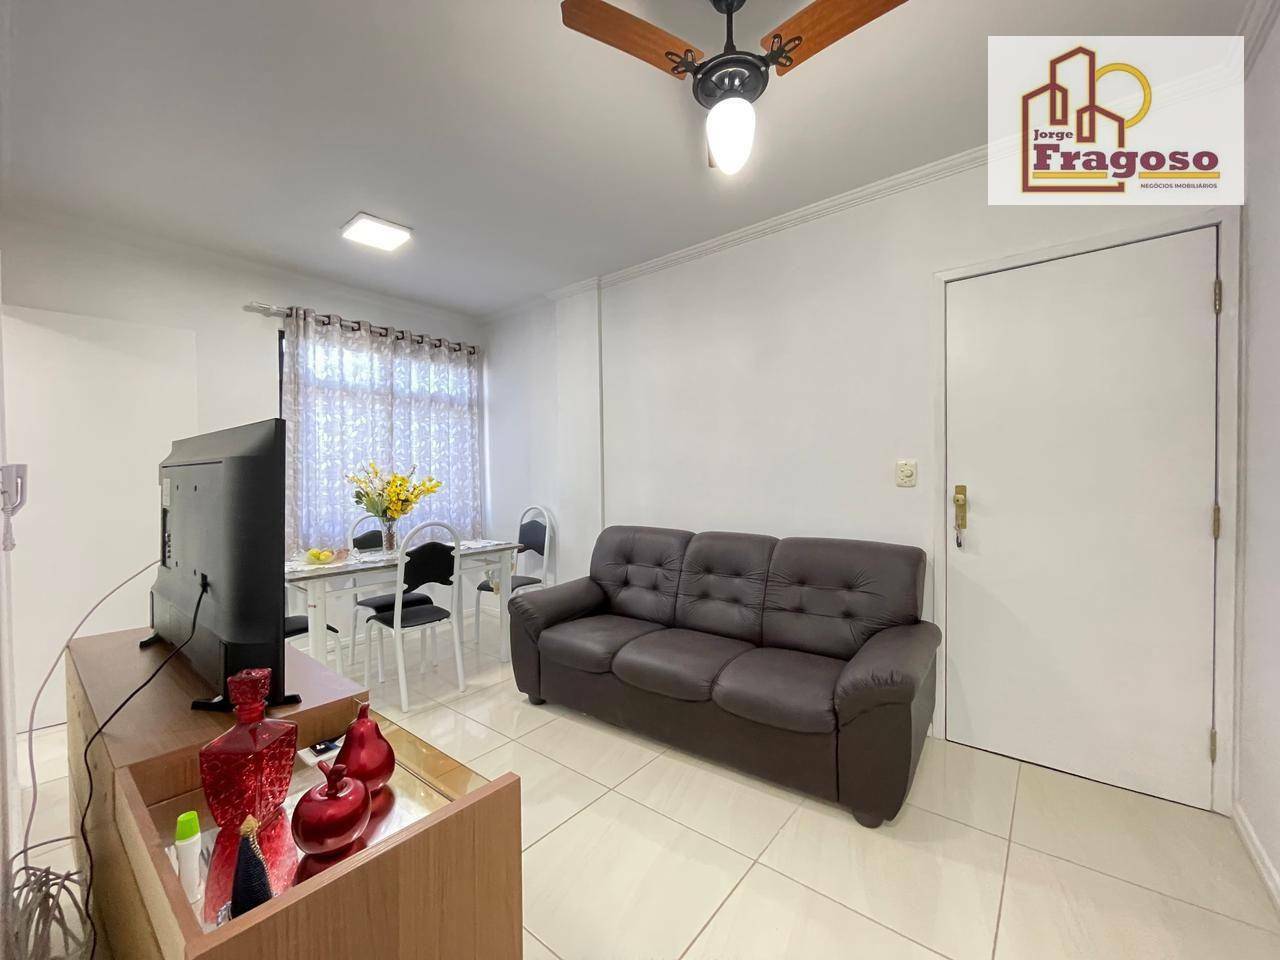 Apartamento à venda em Vila Nova, Cabo Frio - RJ - Foto 3